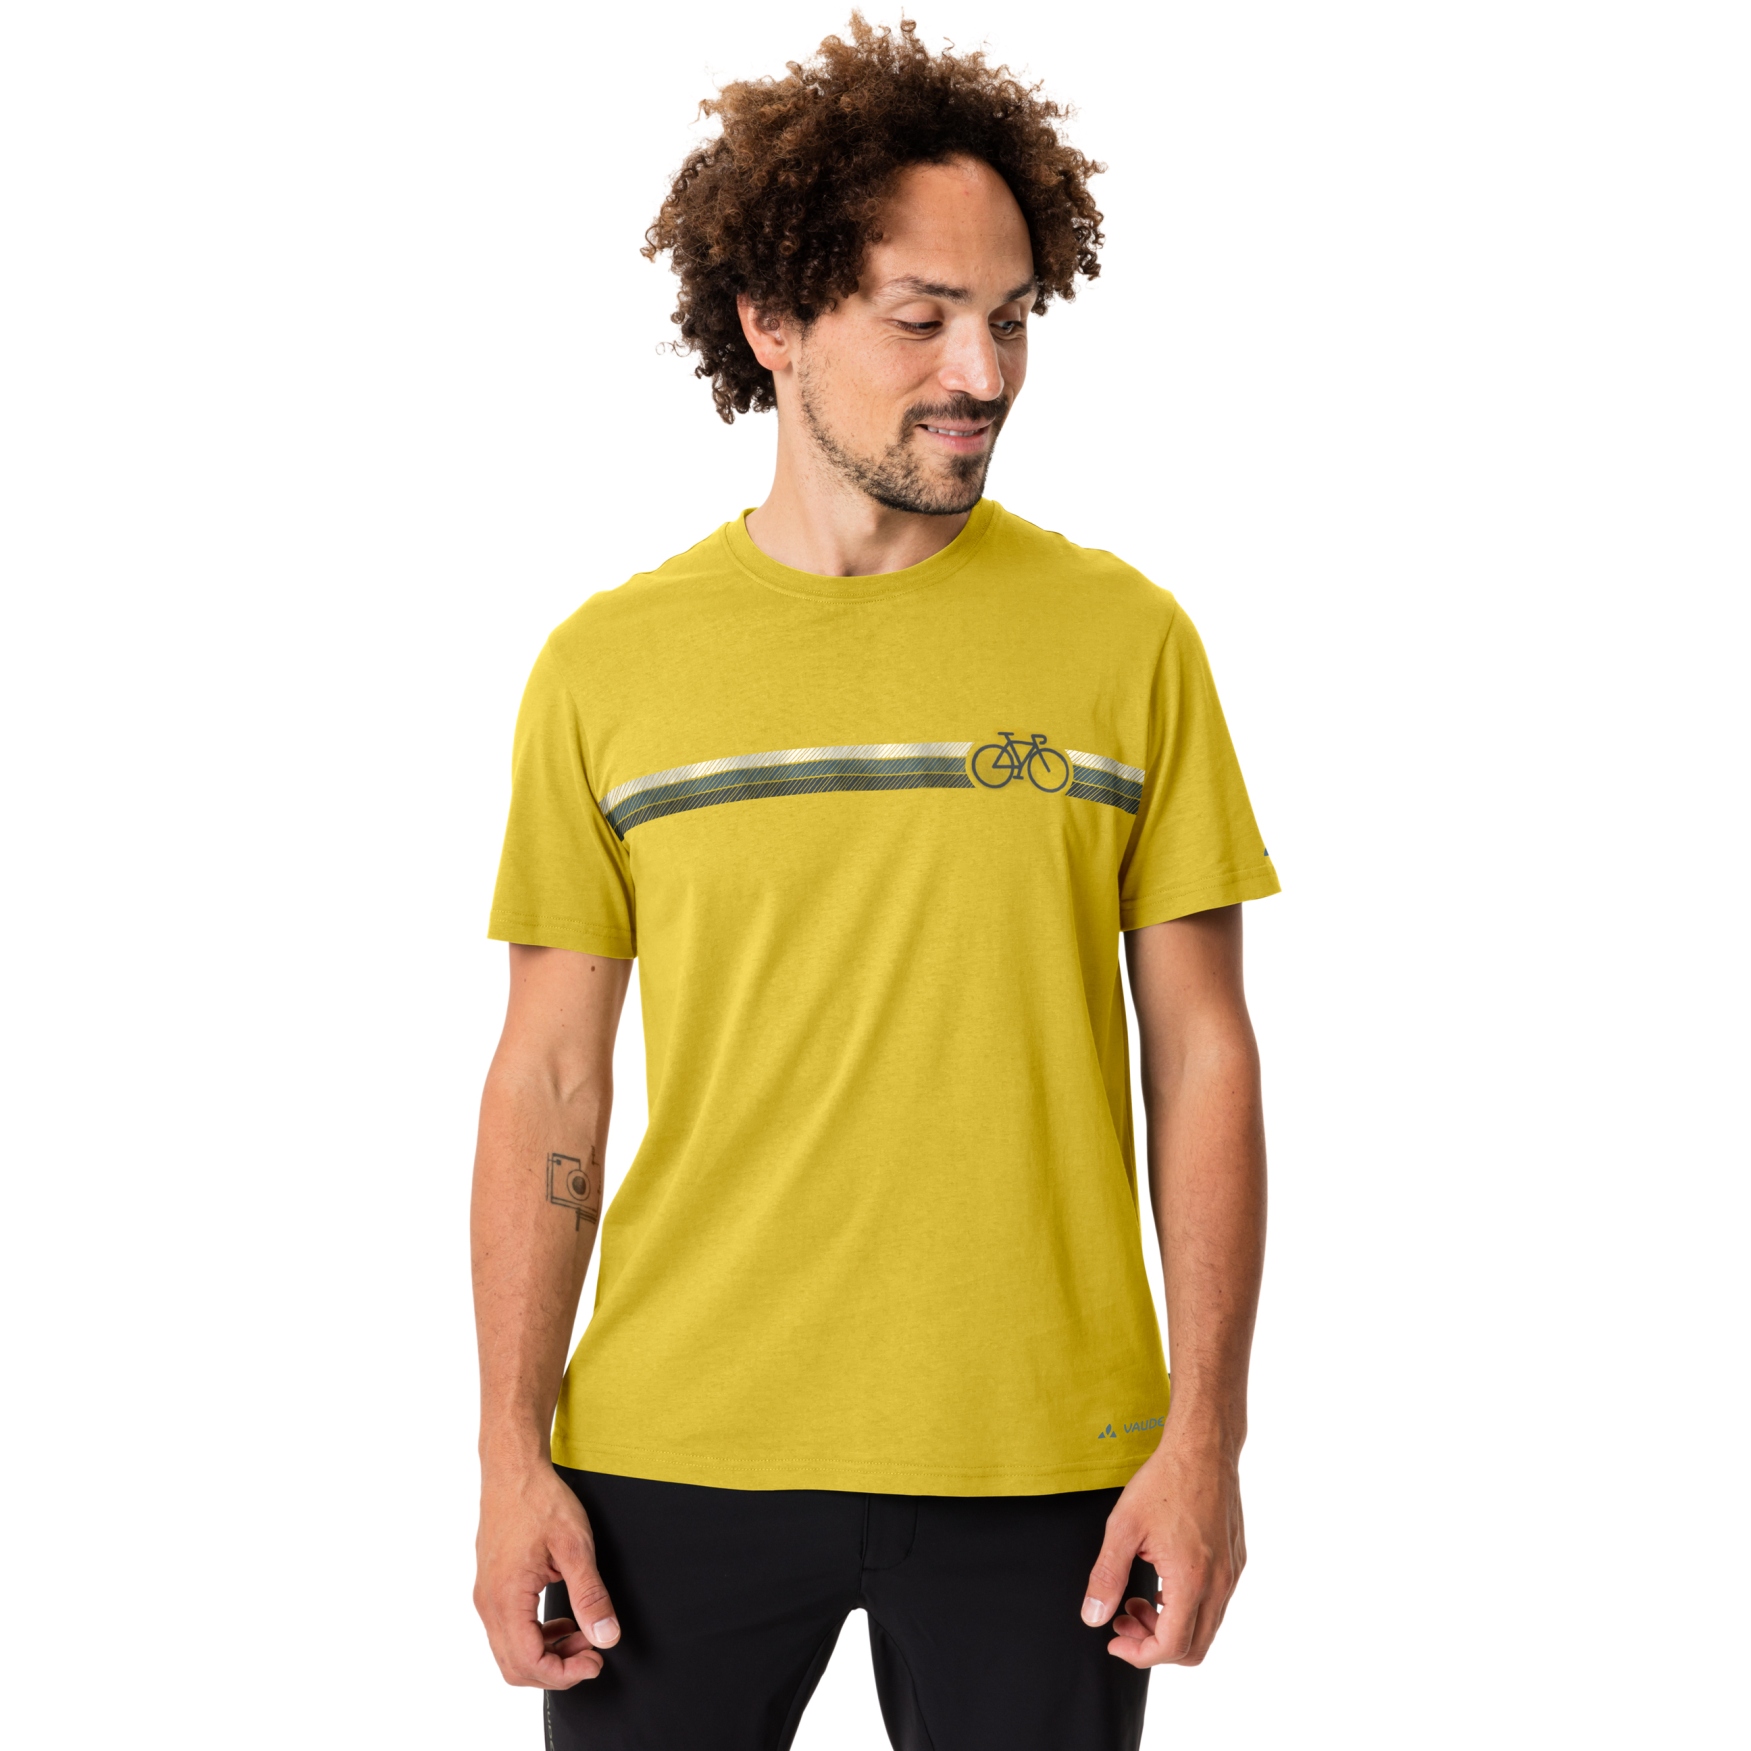 Produktbild von Vaude Cyclist V T-Shirt Herren - dandelion